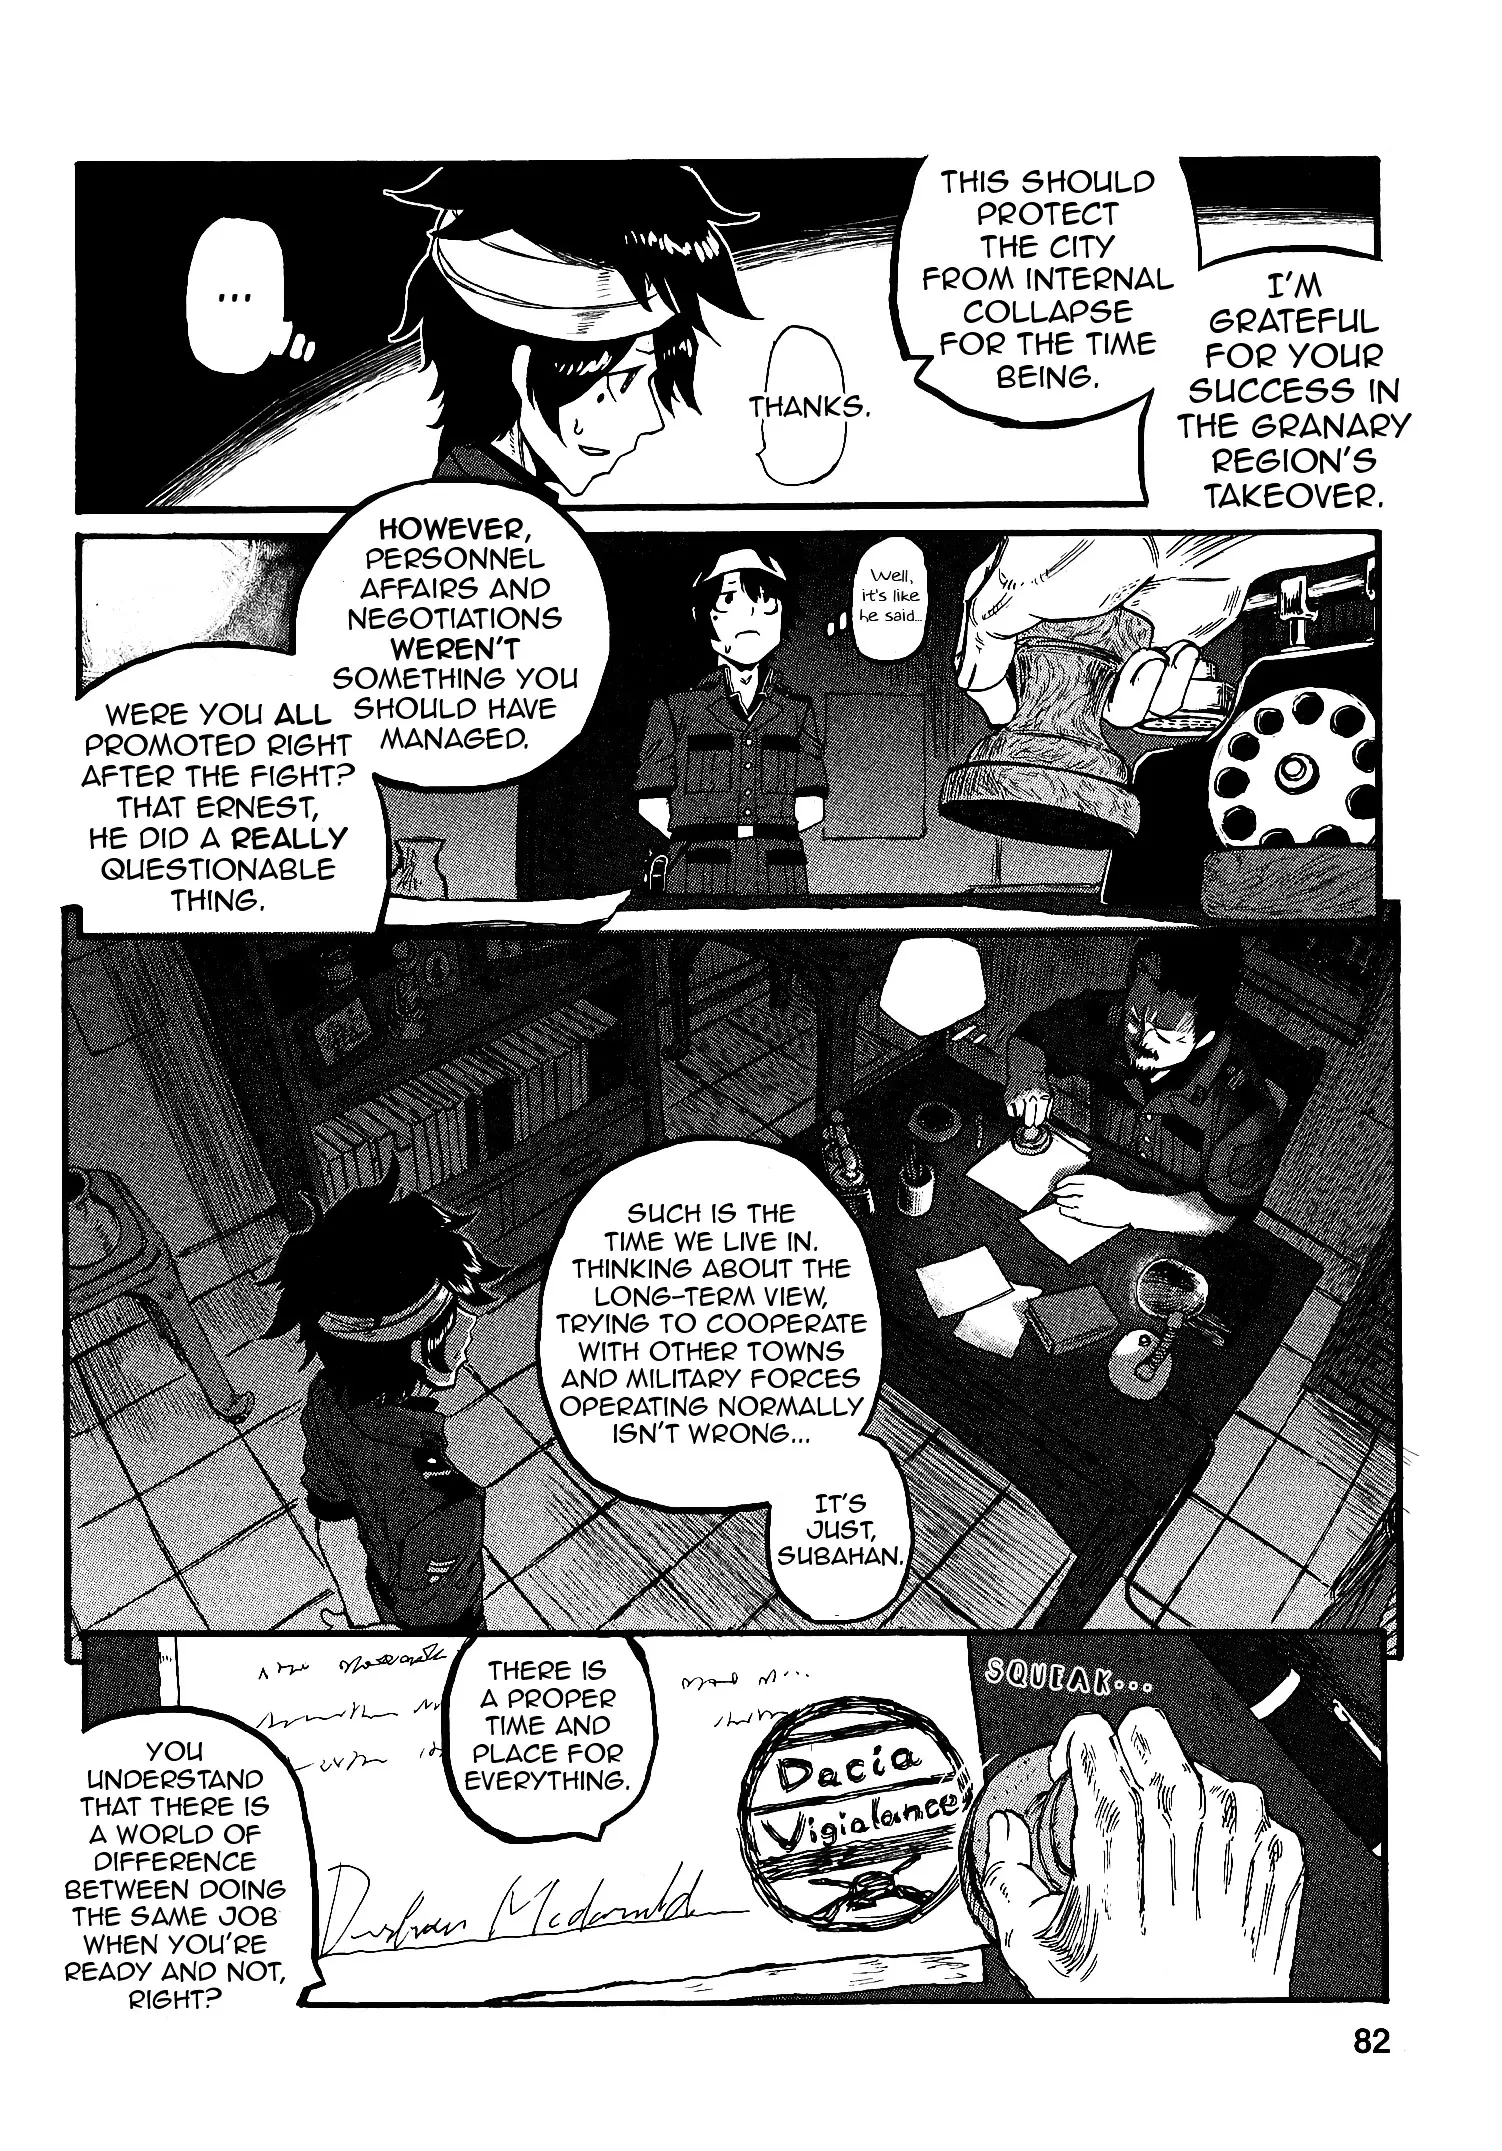 Groundless - Sekigan No Sogekihei - 16 page 12-5c2188b5